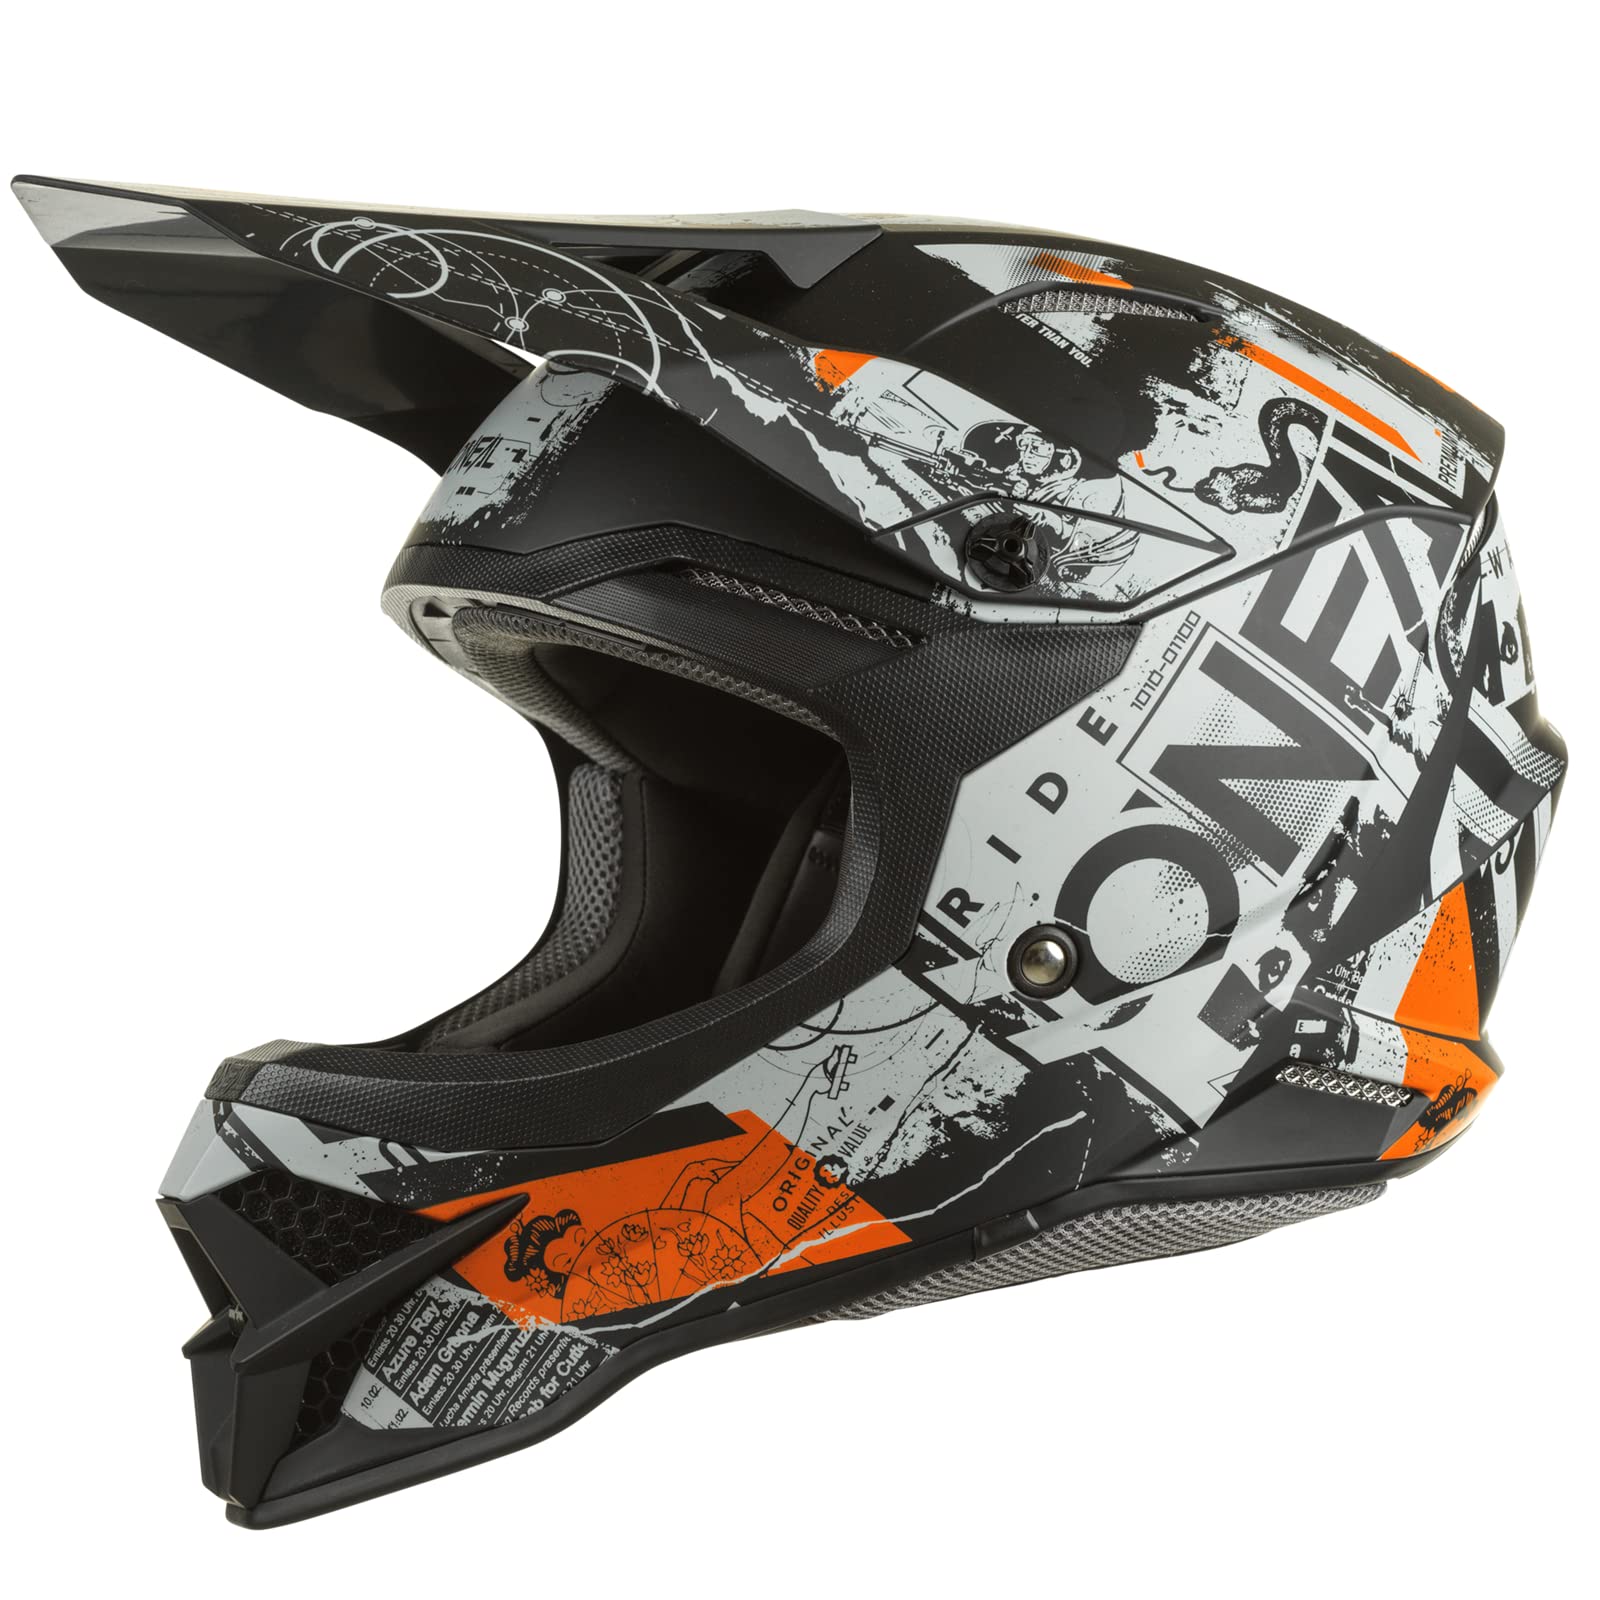 O'NEAL | Motocross-Helm | MX Enduro Motorrad | ABS-Schale, Sicherheitsnorm ECE 2205, Lüftungsöffnungen für optimale Belüftung & Kühlung | 3SRS Helmet Scarz V.22 | Erwachsene | Schwarz Grau Orange | L